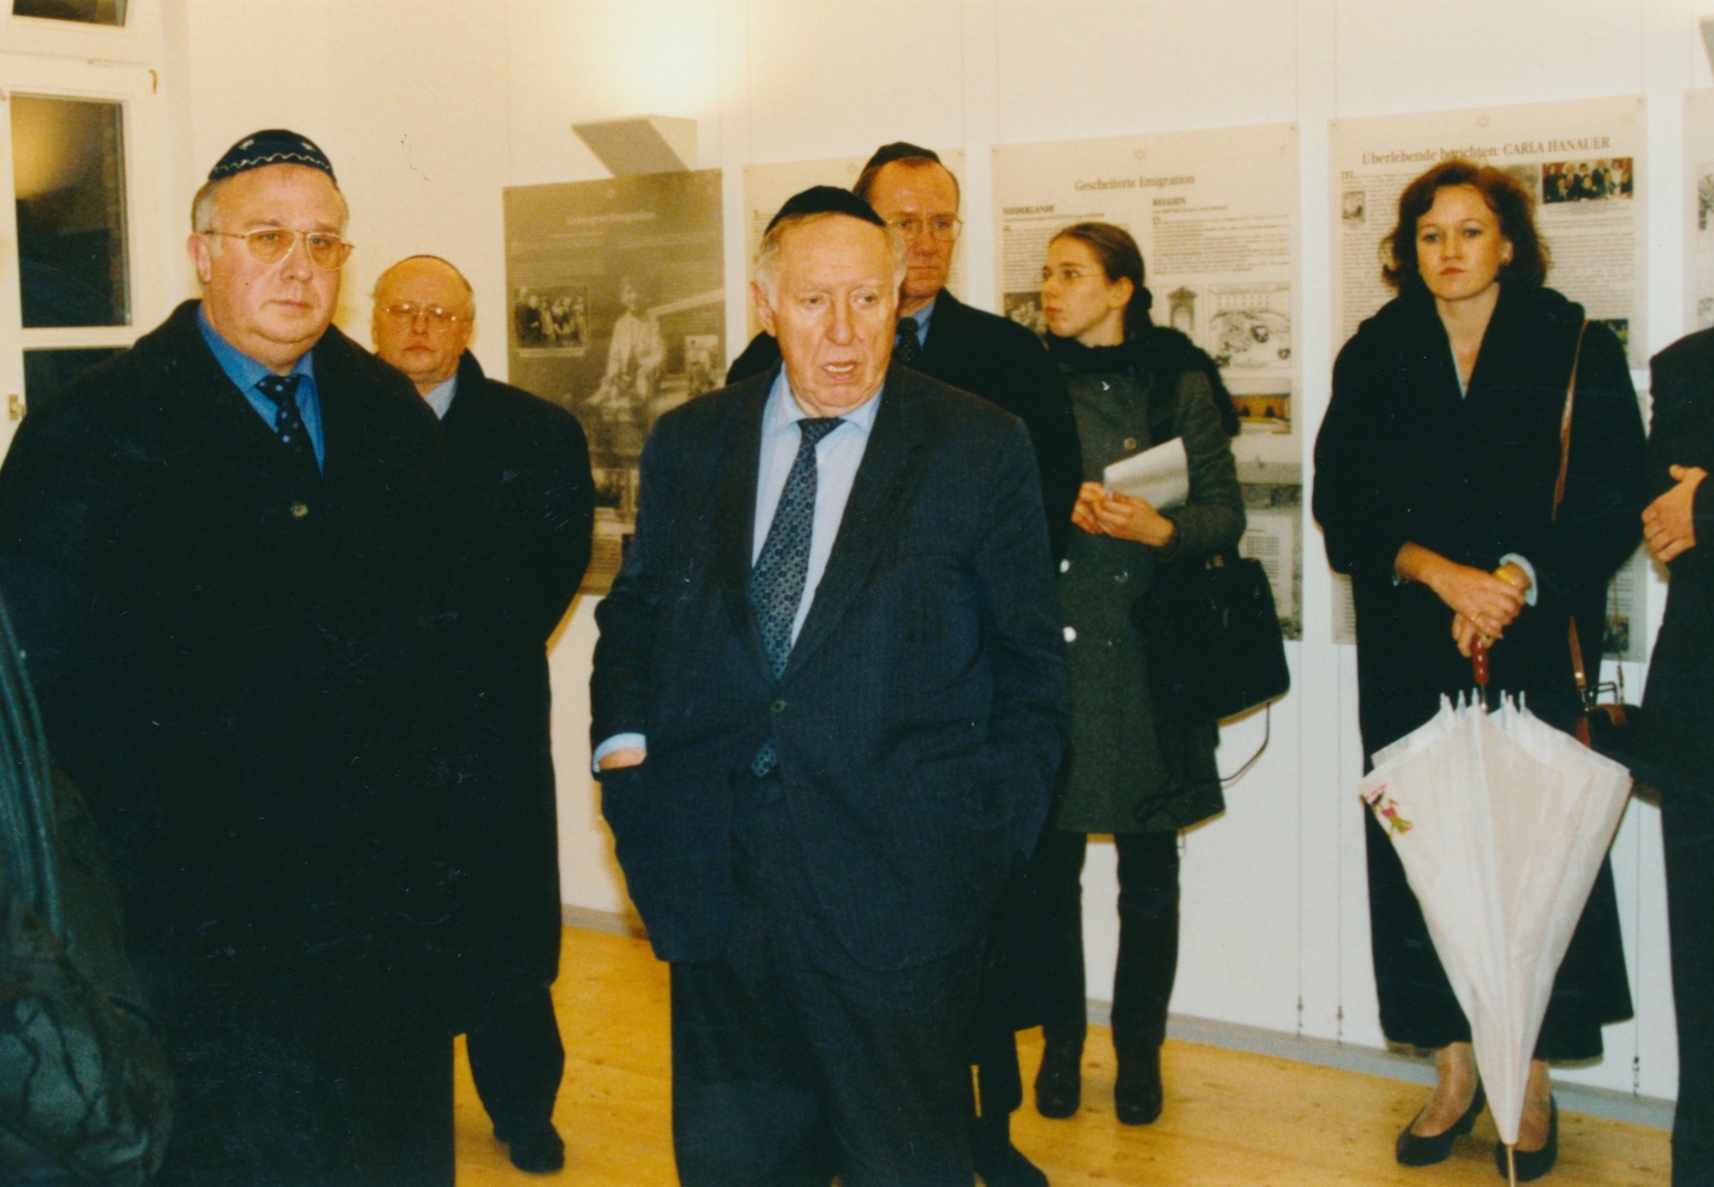 Abb. 4: Ignatz Bubis bei der Einweihung des Gedenkortes „Jüdische Schule“ am 8. November 1998.